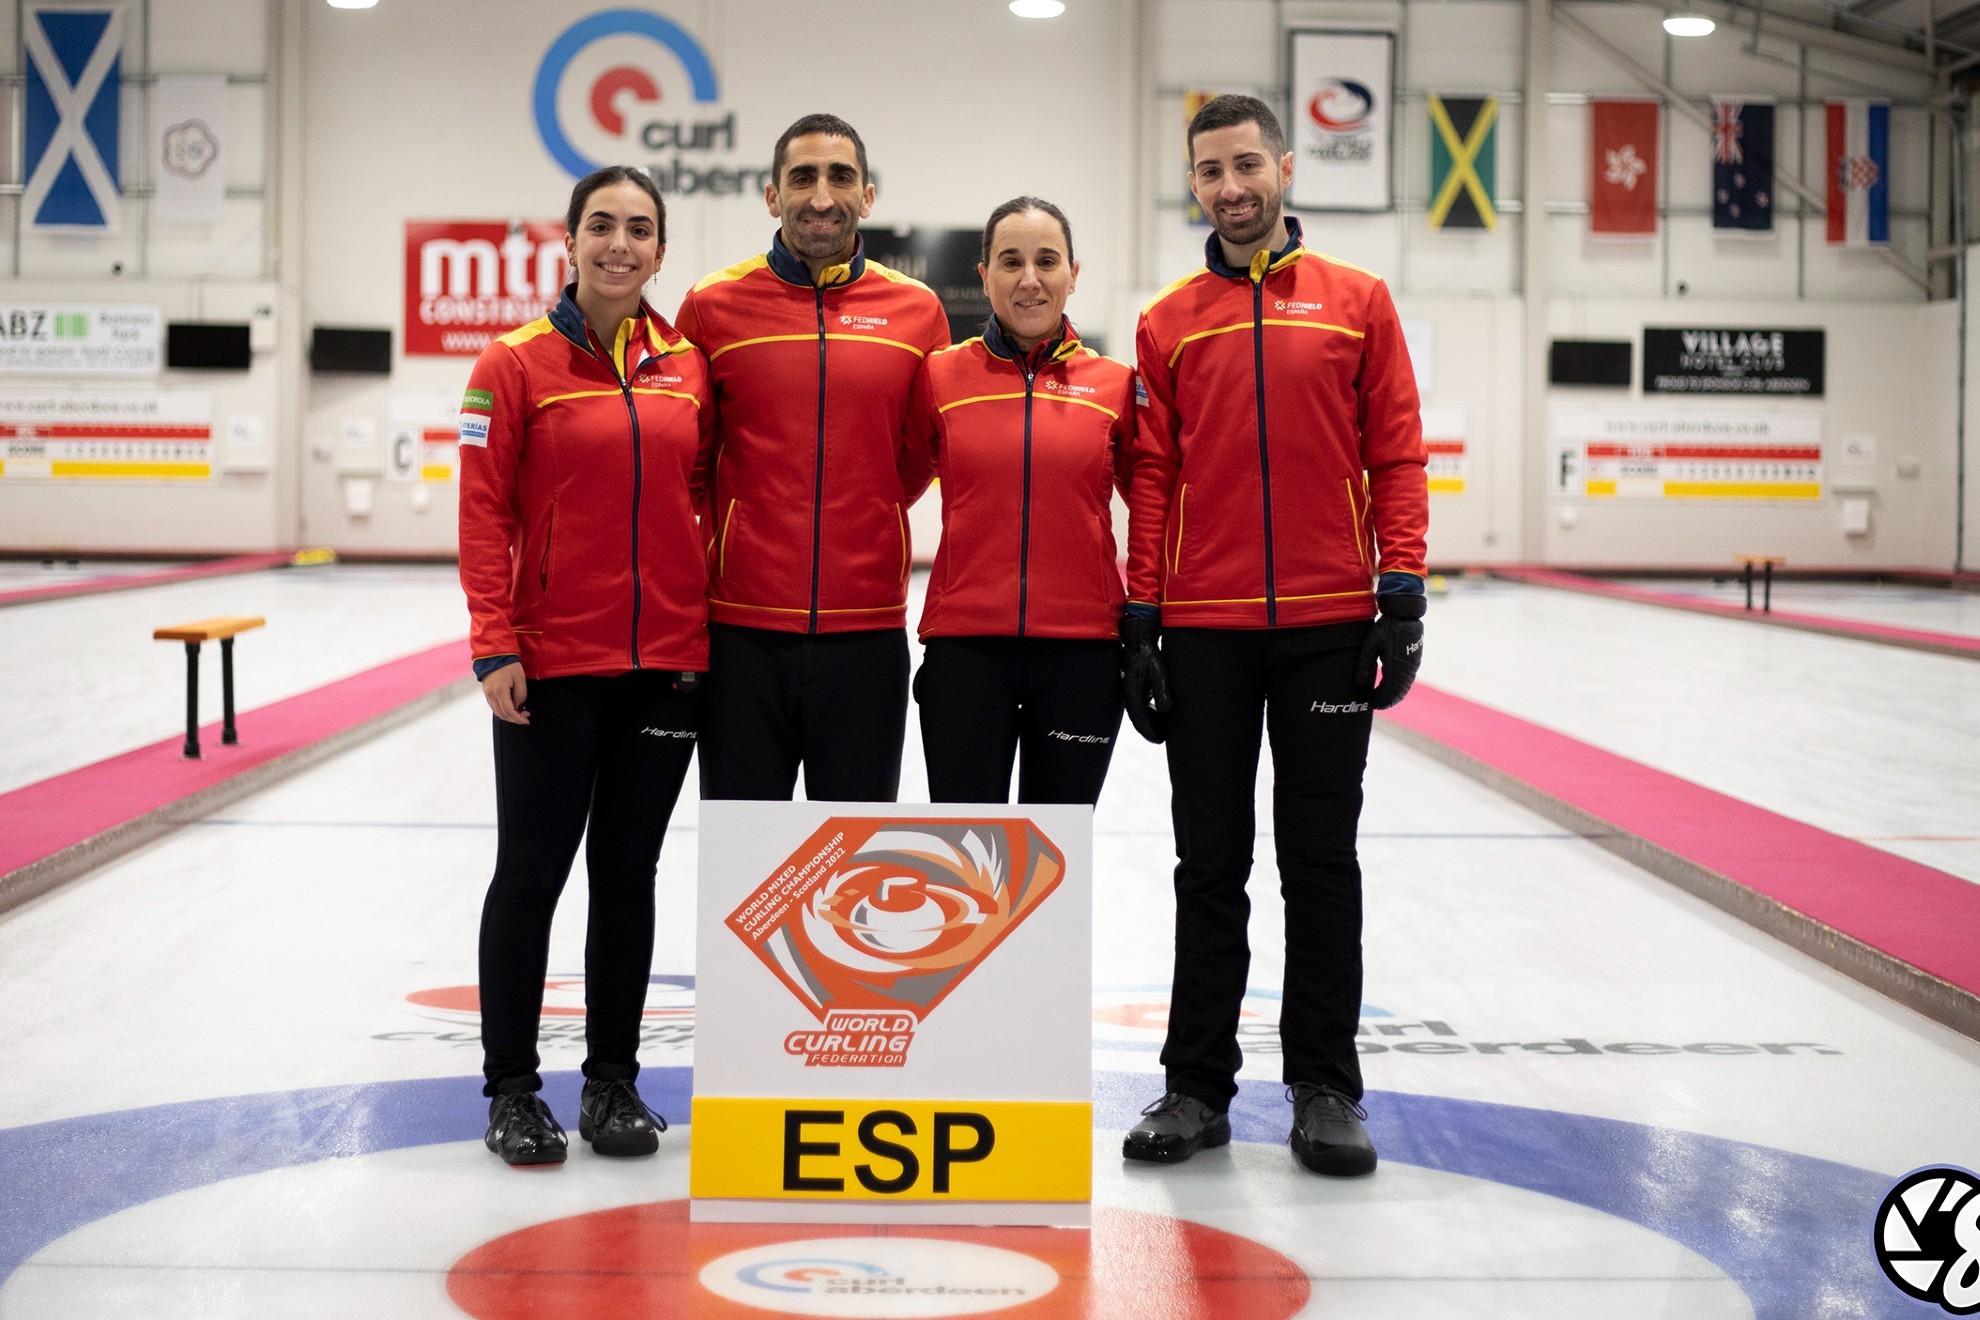 Selección española mixta de curling